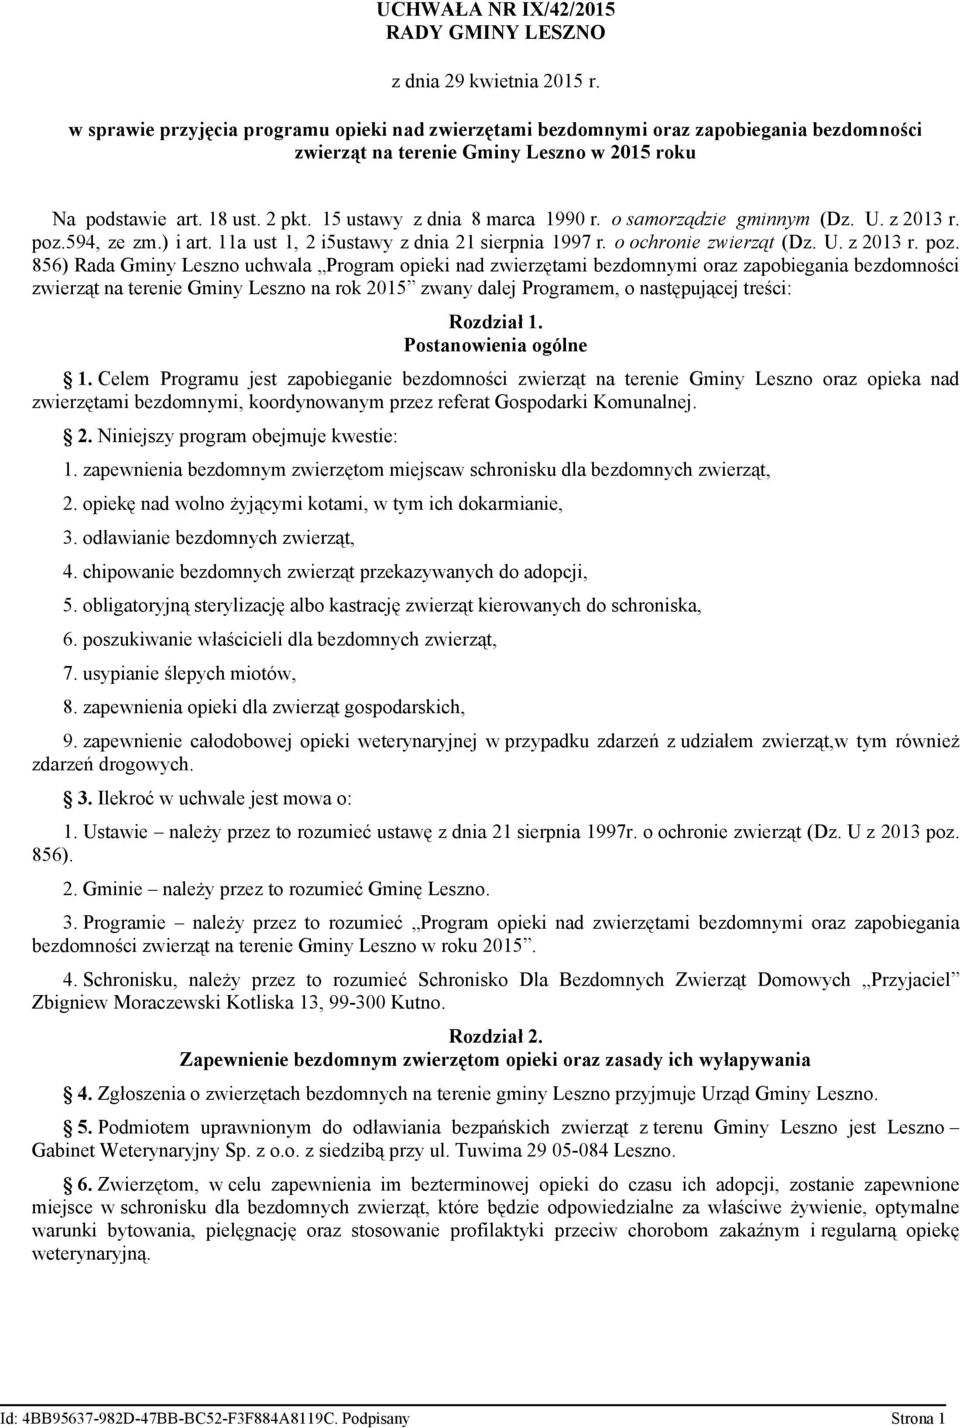 15 ustawy z dnia 8 marca 1990 r. o samorządzie gminnym (Dz. U. z 2013 r. poz.